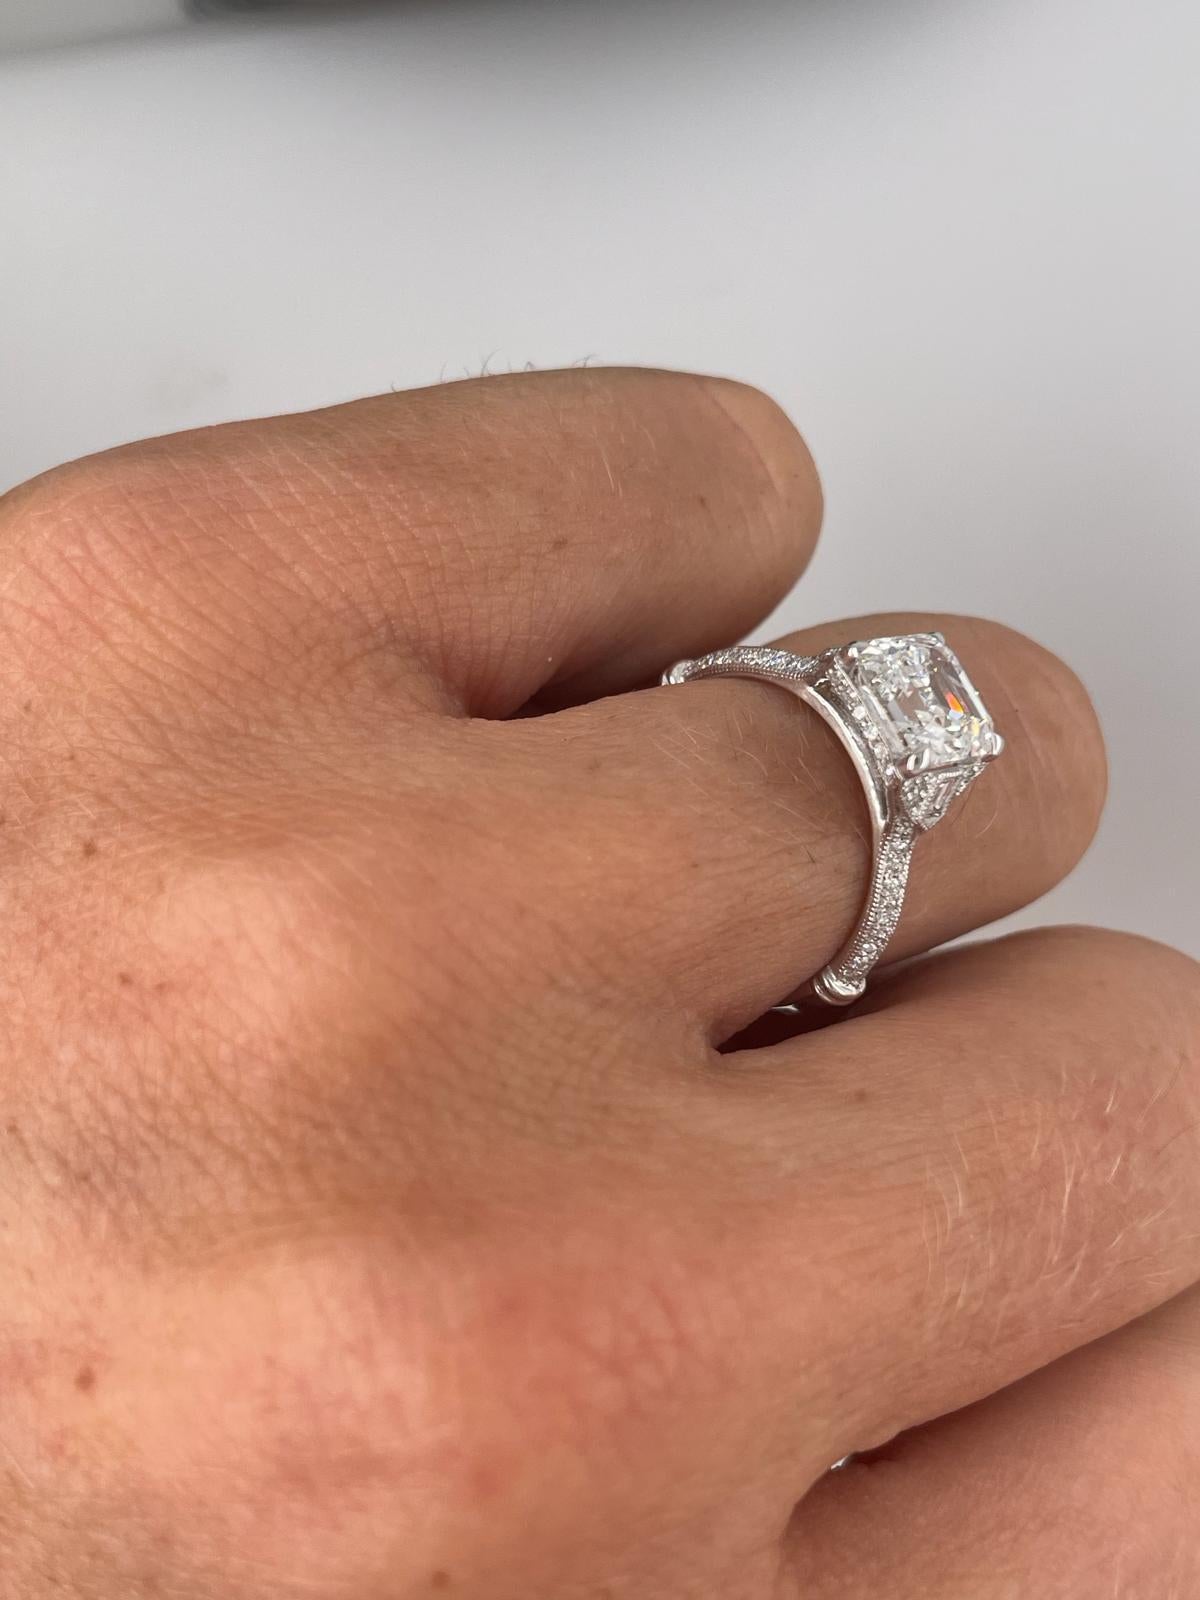 For Sale:  2ct Art Deco asscher cut diamond ring 11